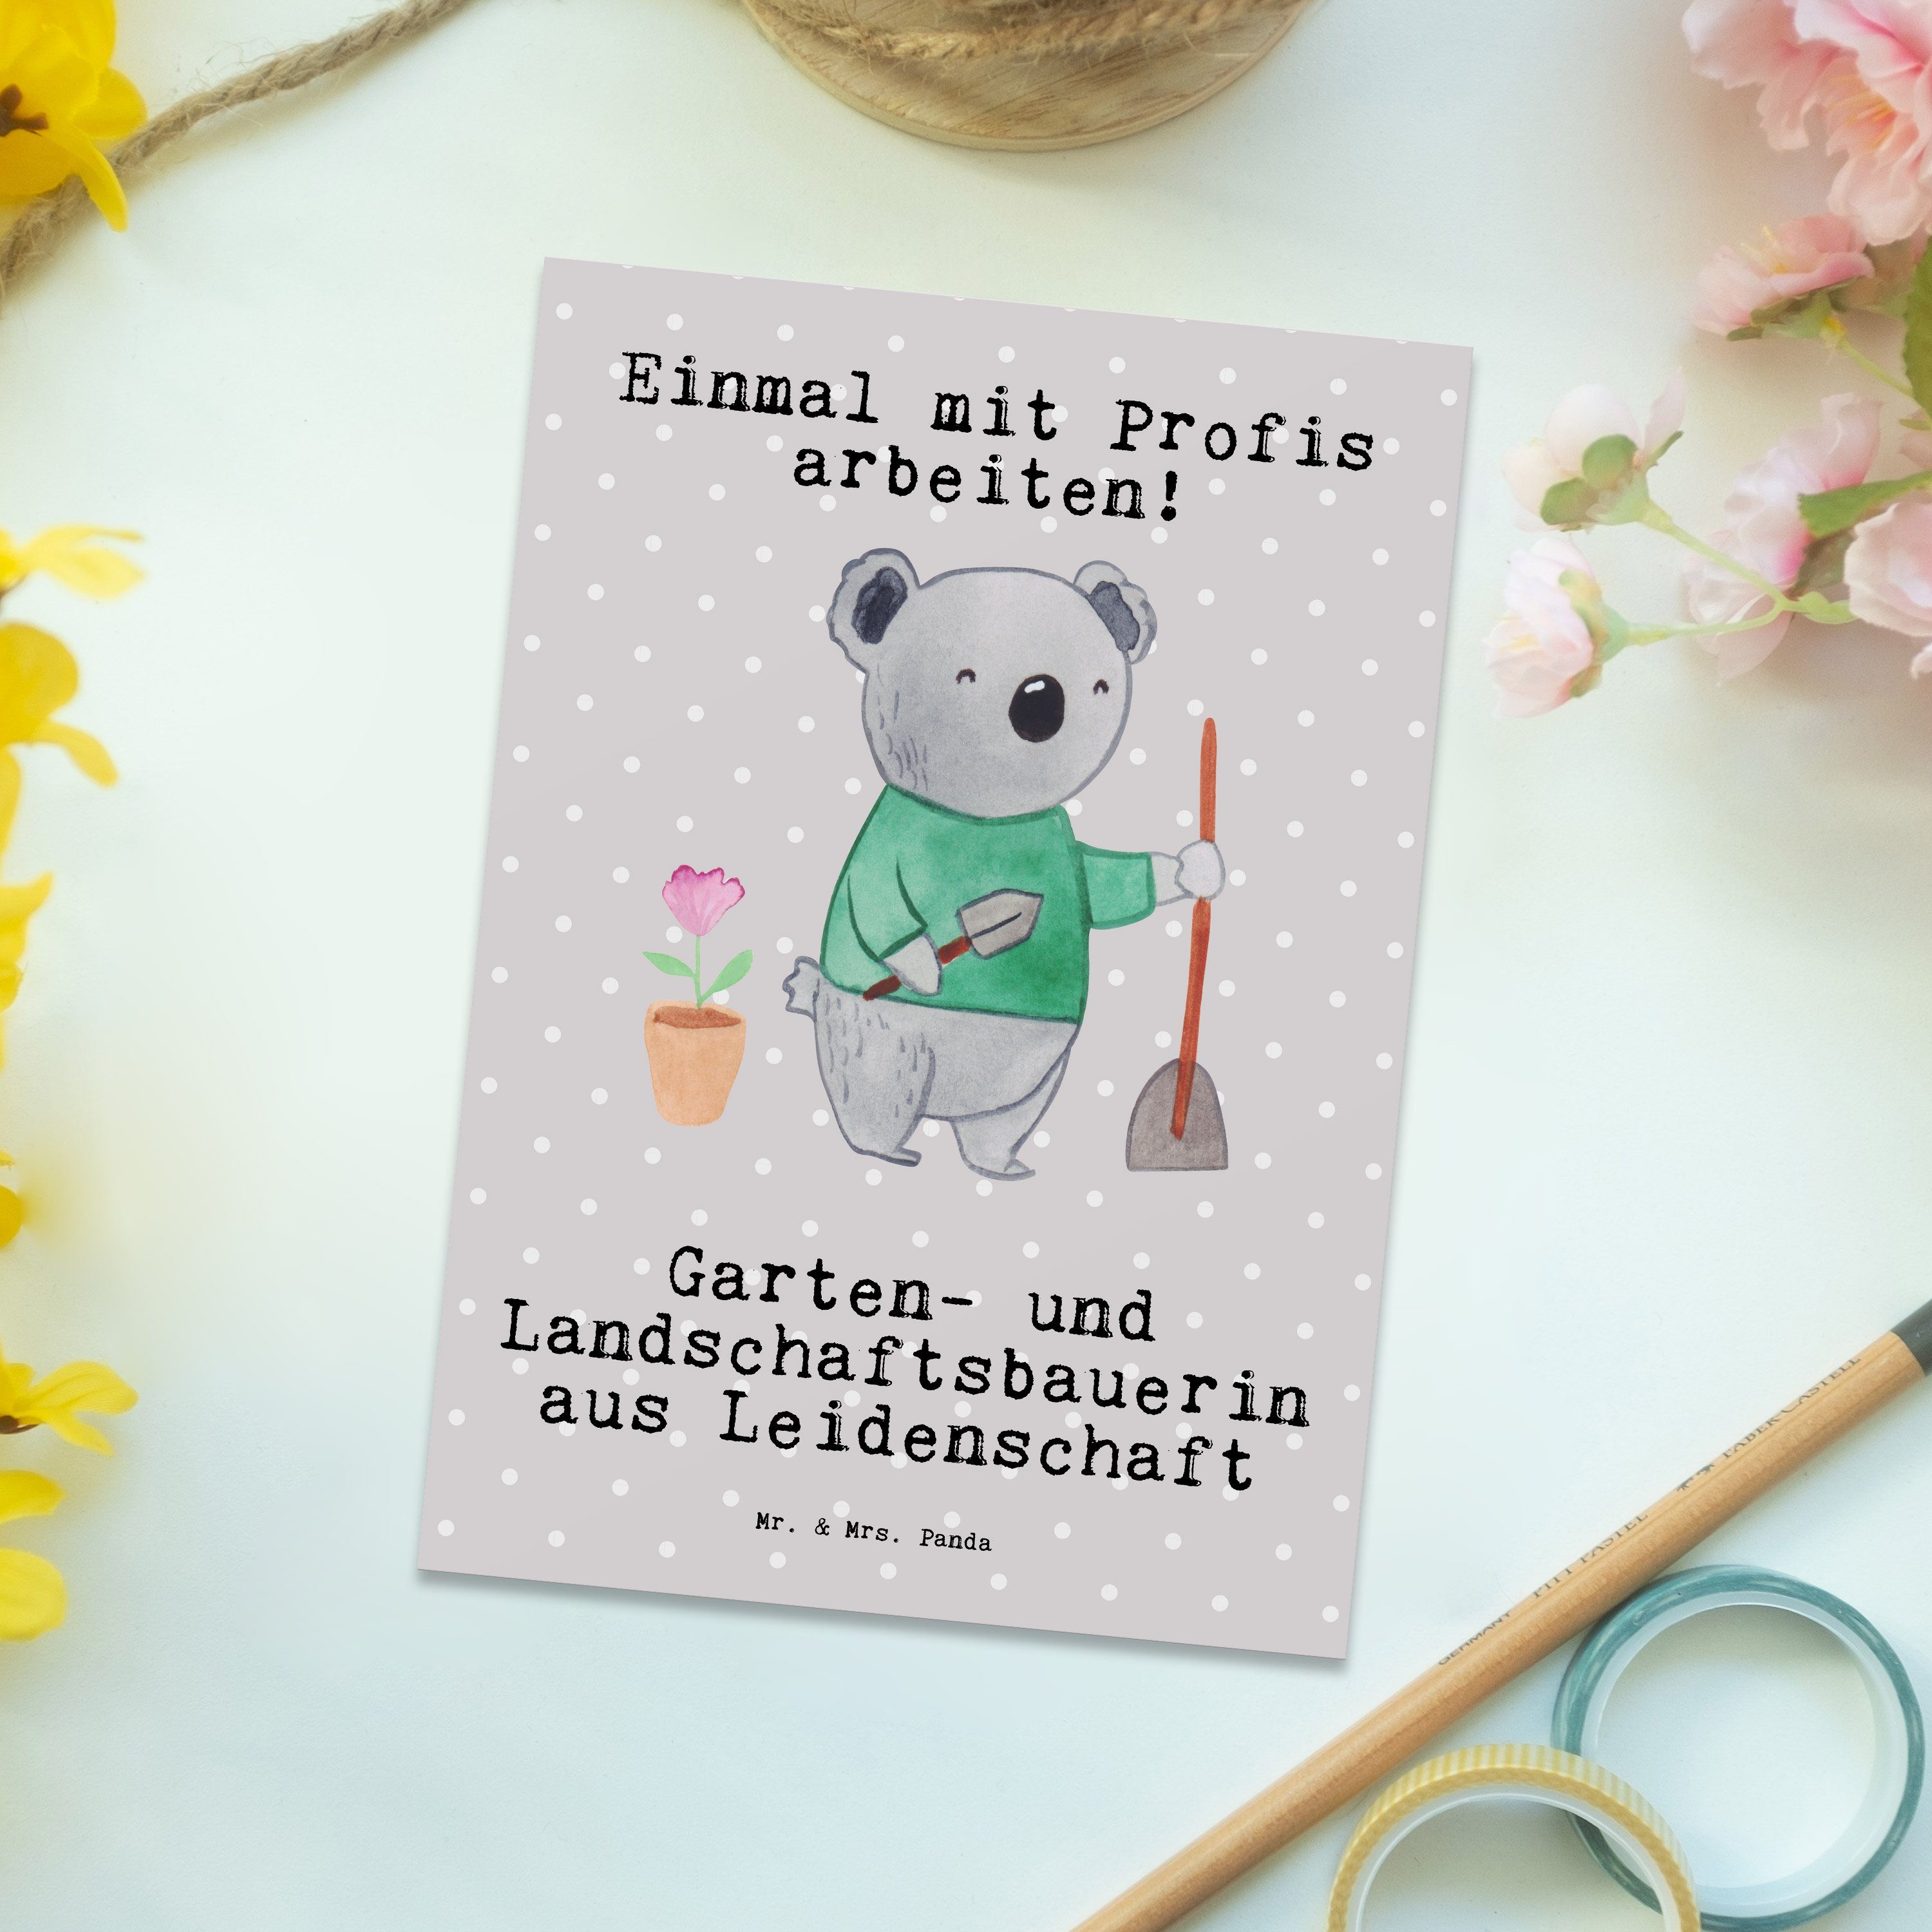 Pastell aus und & Mrs. Mr. Panda Landschaftsbauerin - Grau - Garten- Gesc Leidenschaft Postkarte